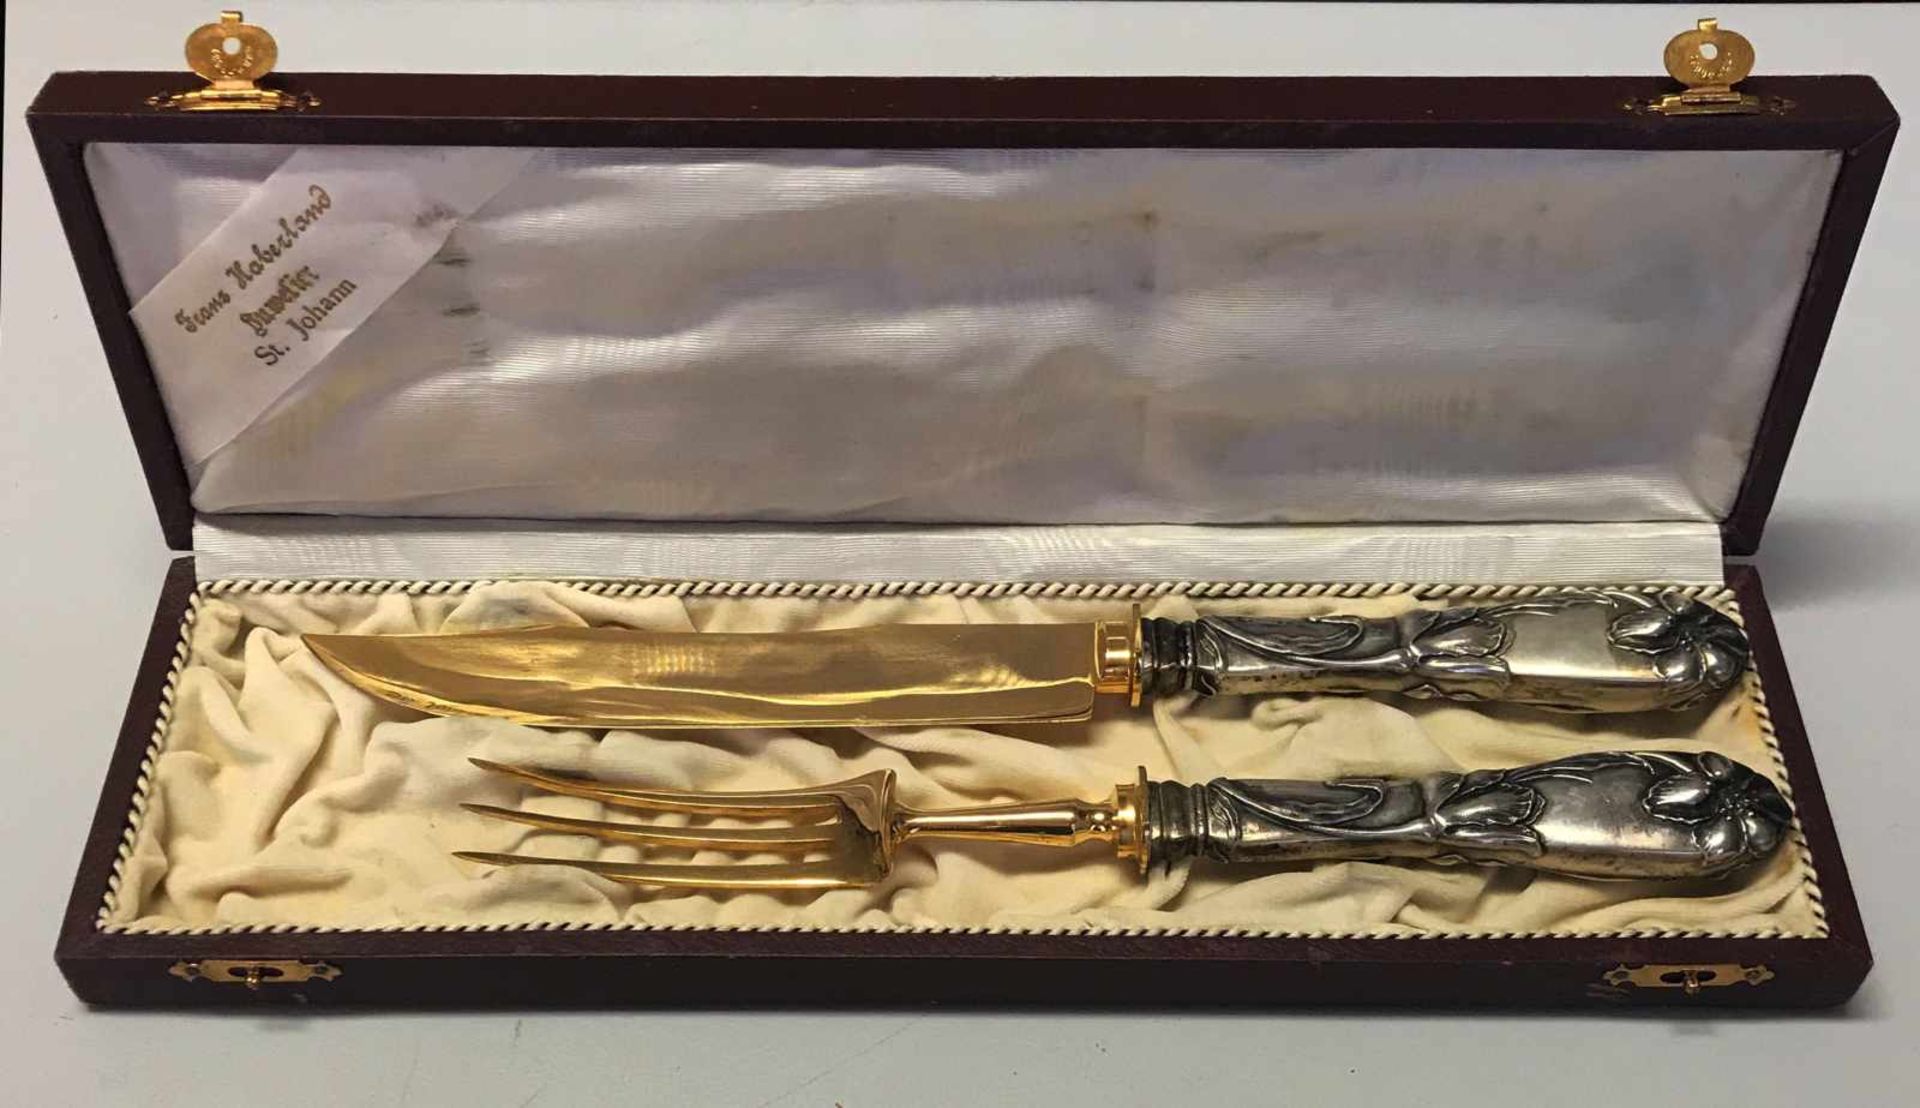 Vorlegebesteck, 800er Silber, mit Blumenreliefs an den Griffen und vergoldeter Gabel bzw. Messer,